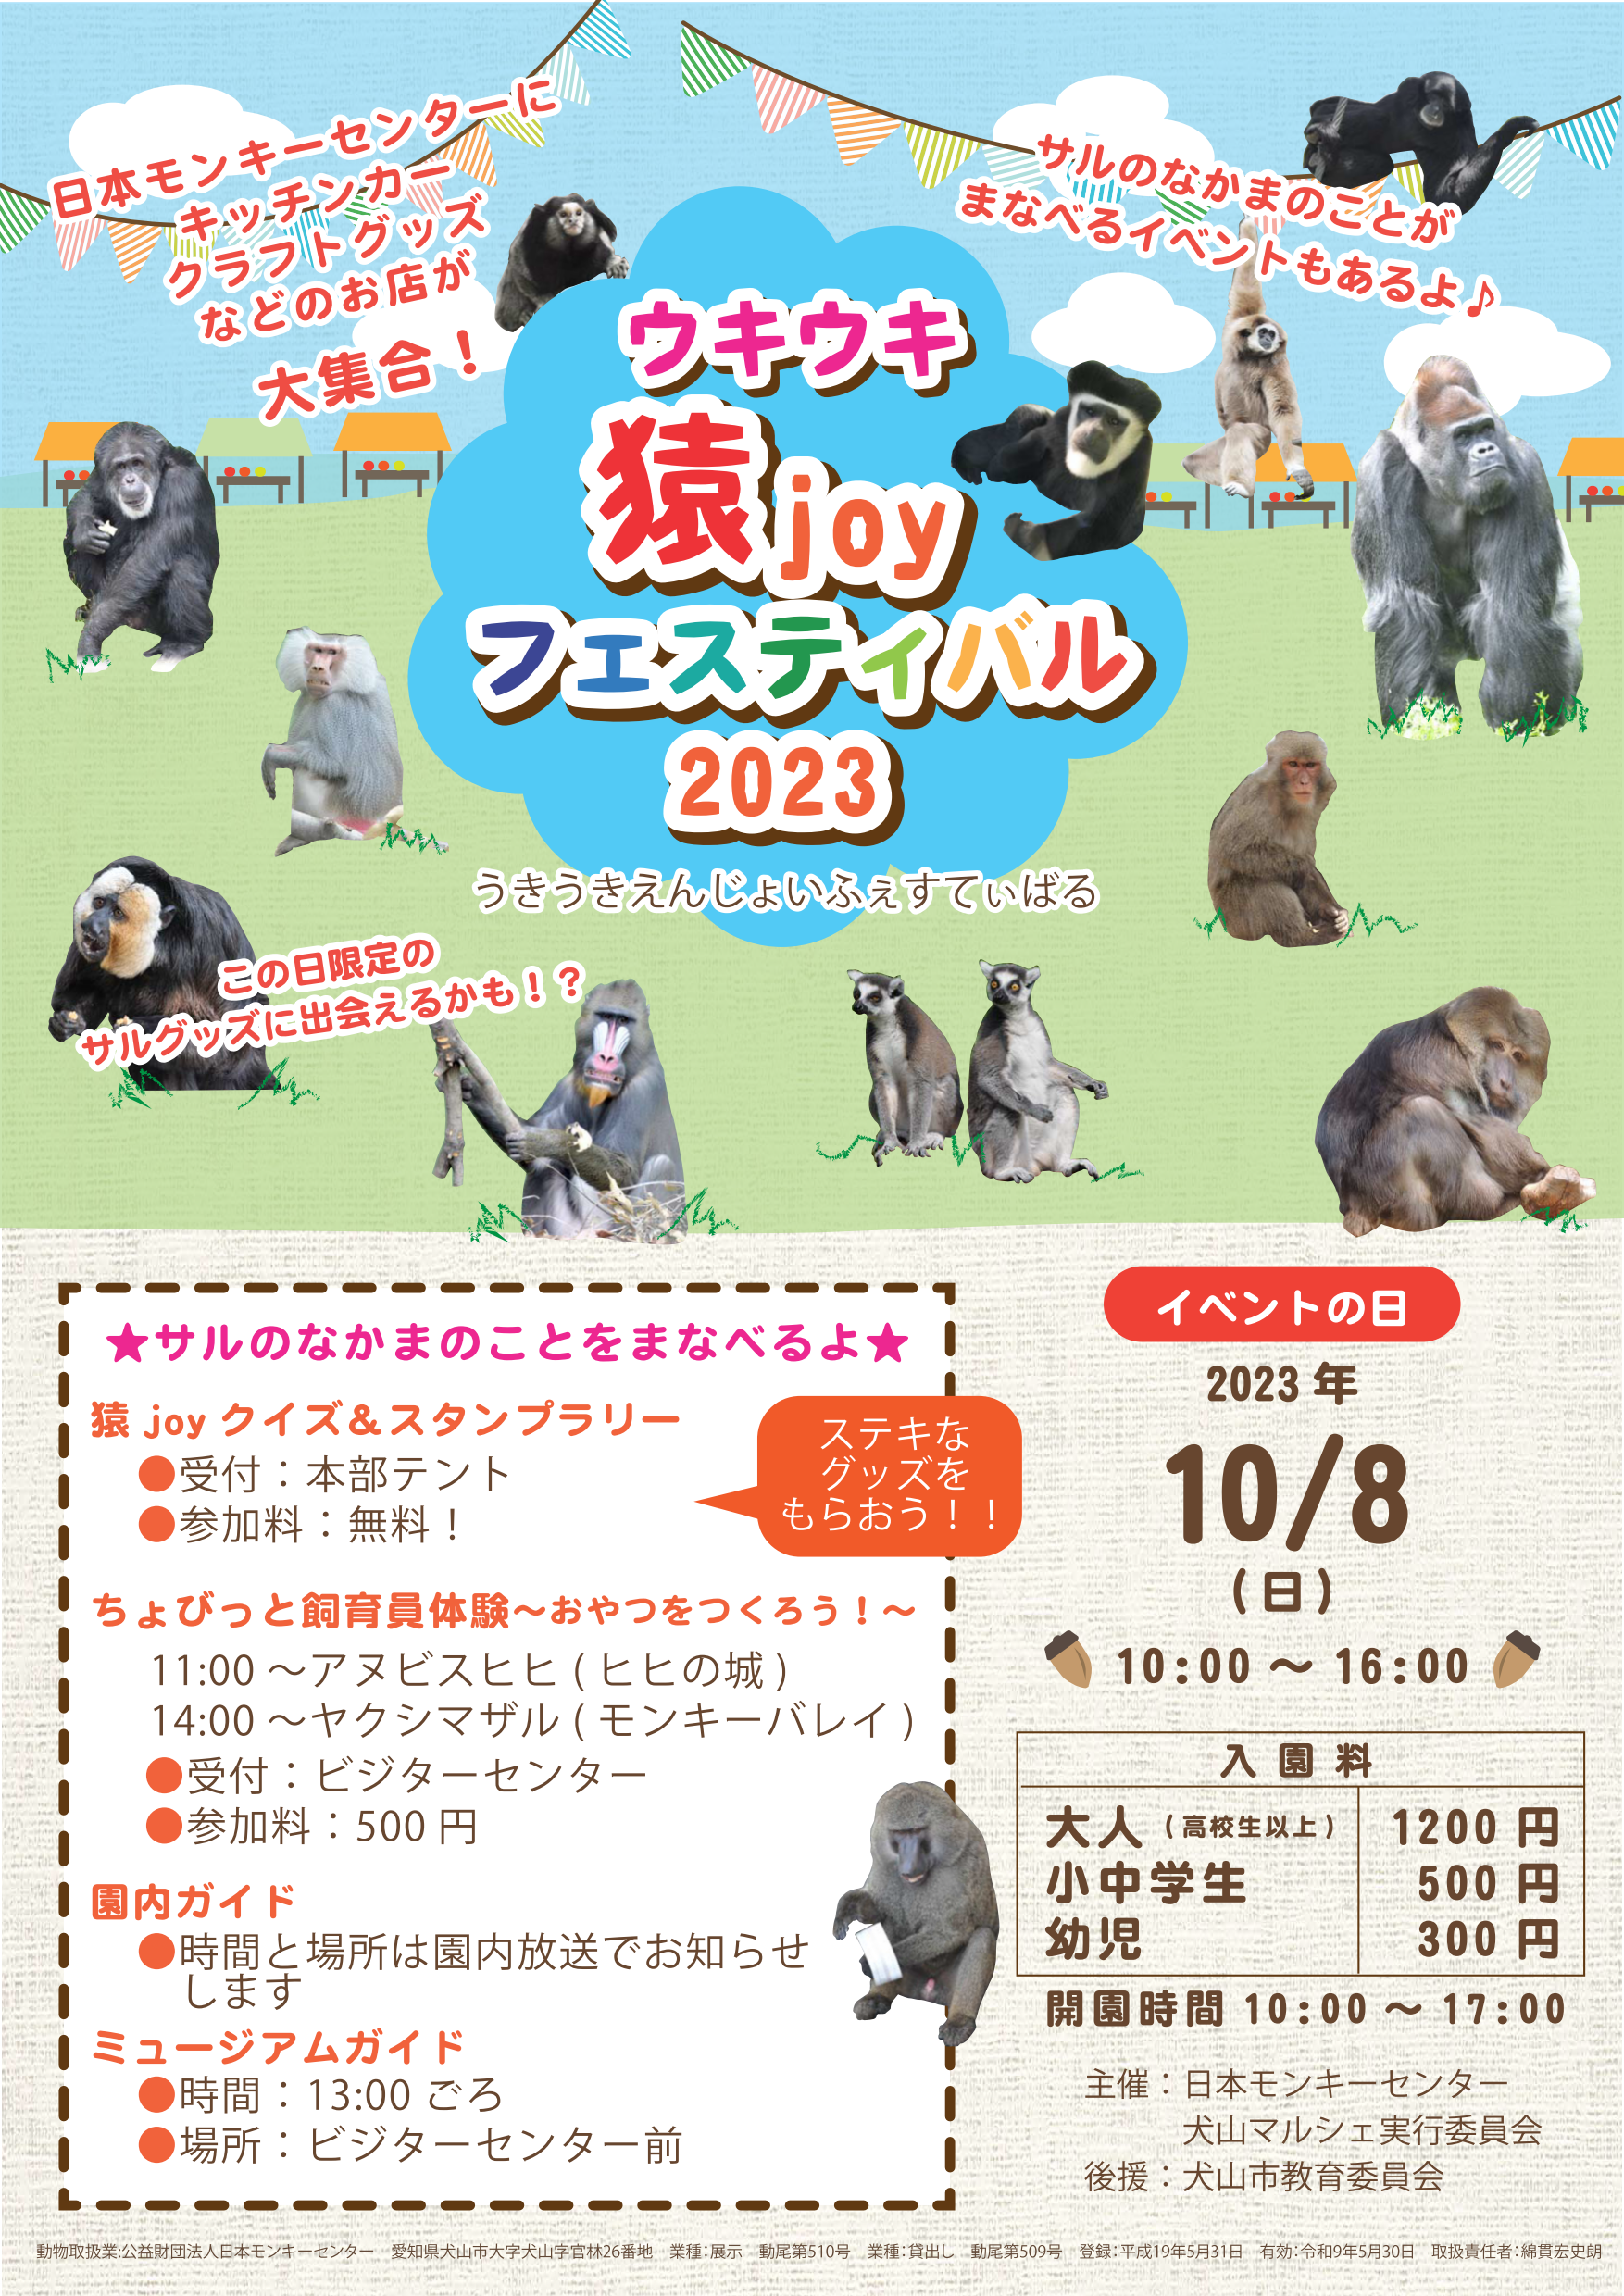 ウキウキ猿joyフェスティバル 2023 ポスター